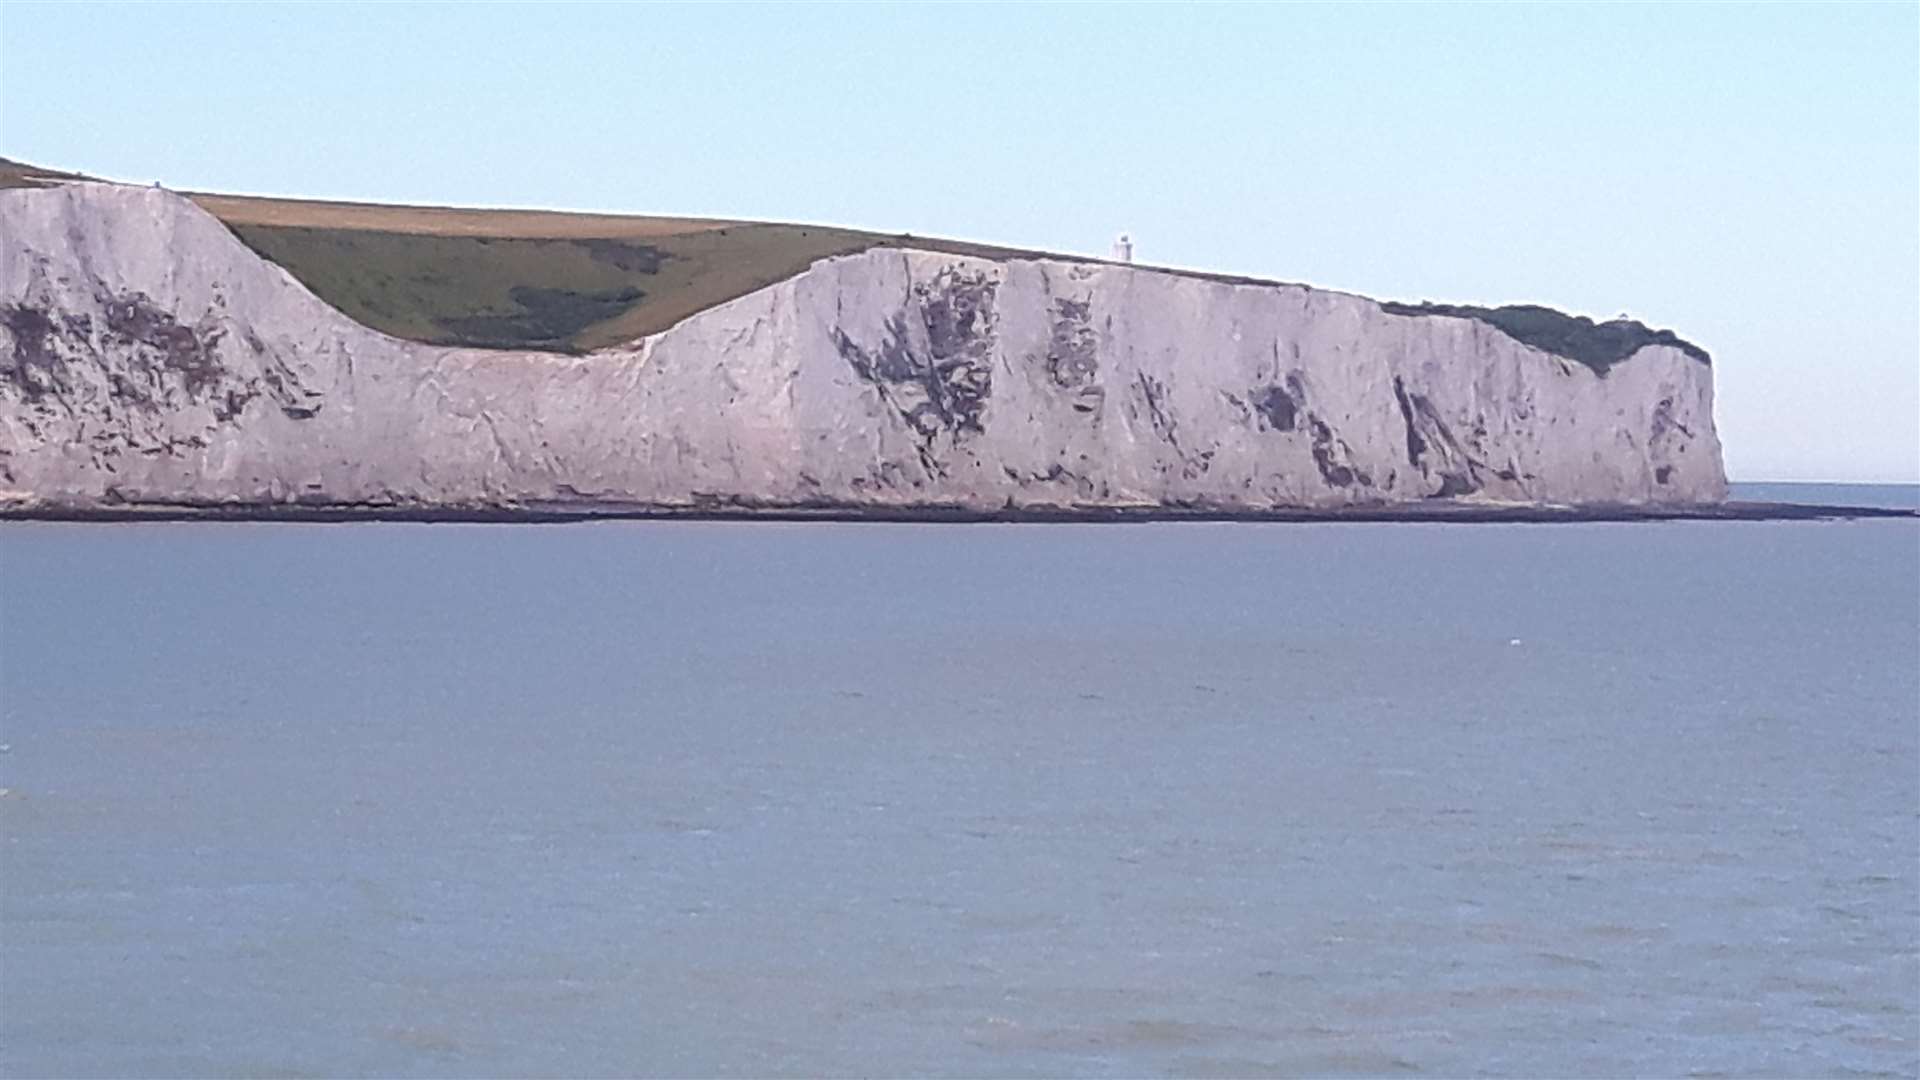 Dover's world-famous tourism asset: the White Cliffs